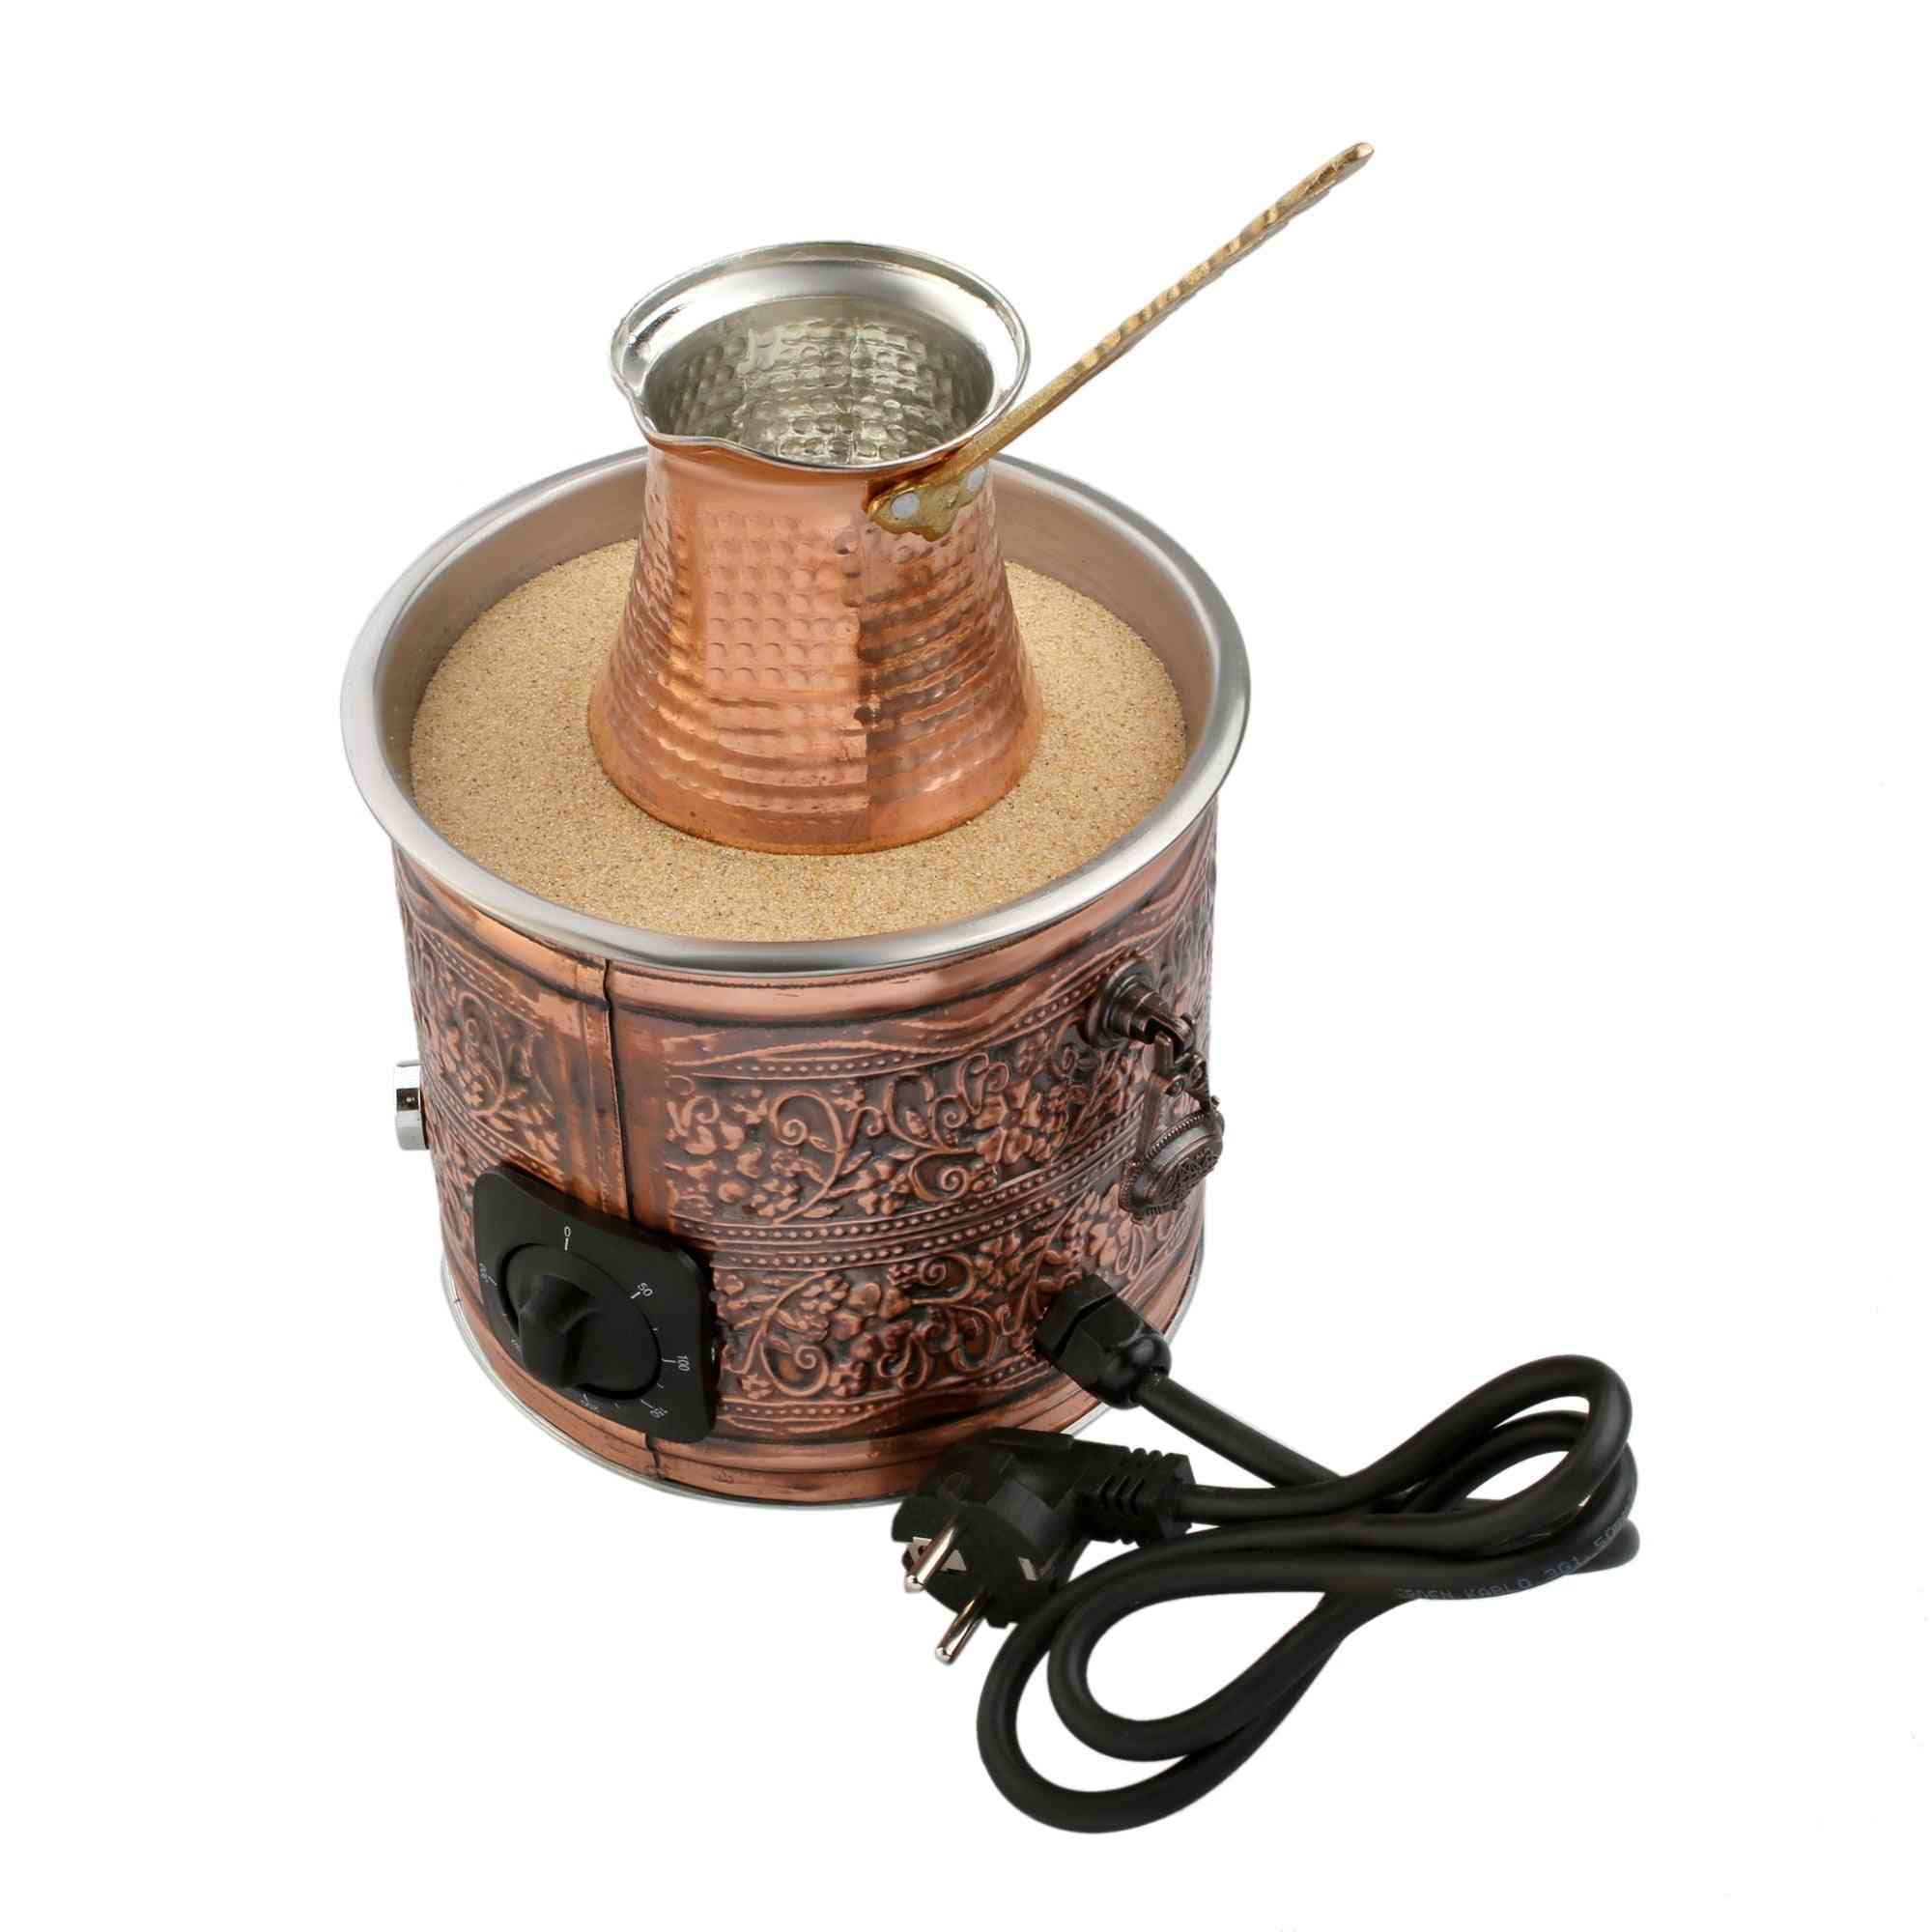 Copper Electric Hot Sand Coffee Maker Heater Machine